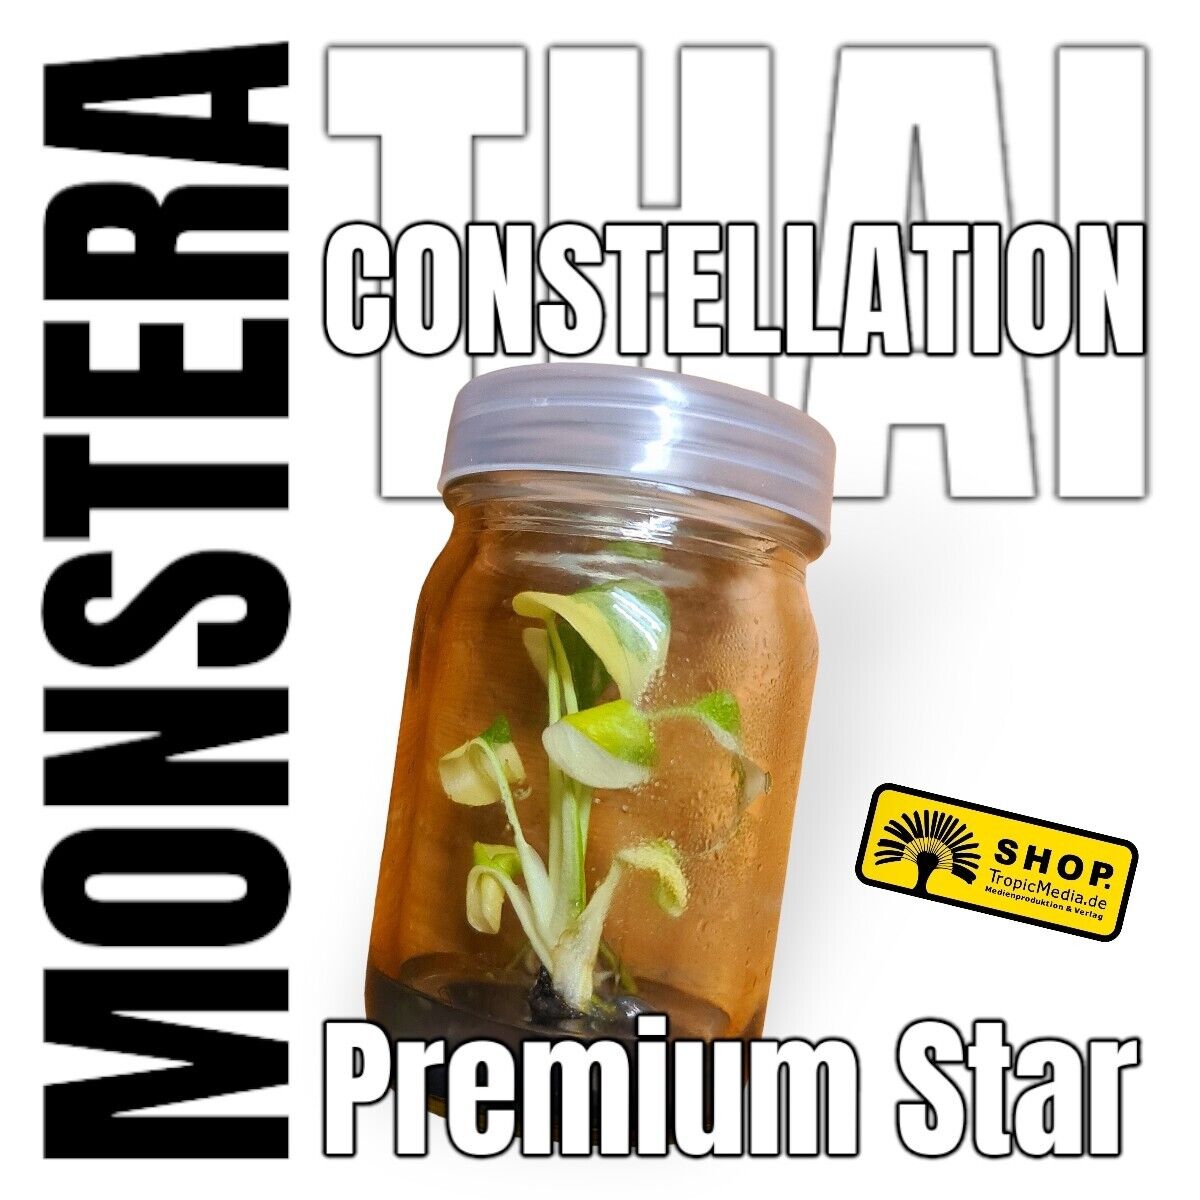 Monstera Thai Constellation Premium Star Tissue Culture (TC)